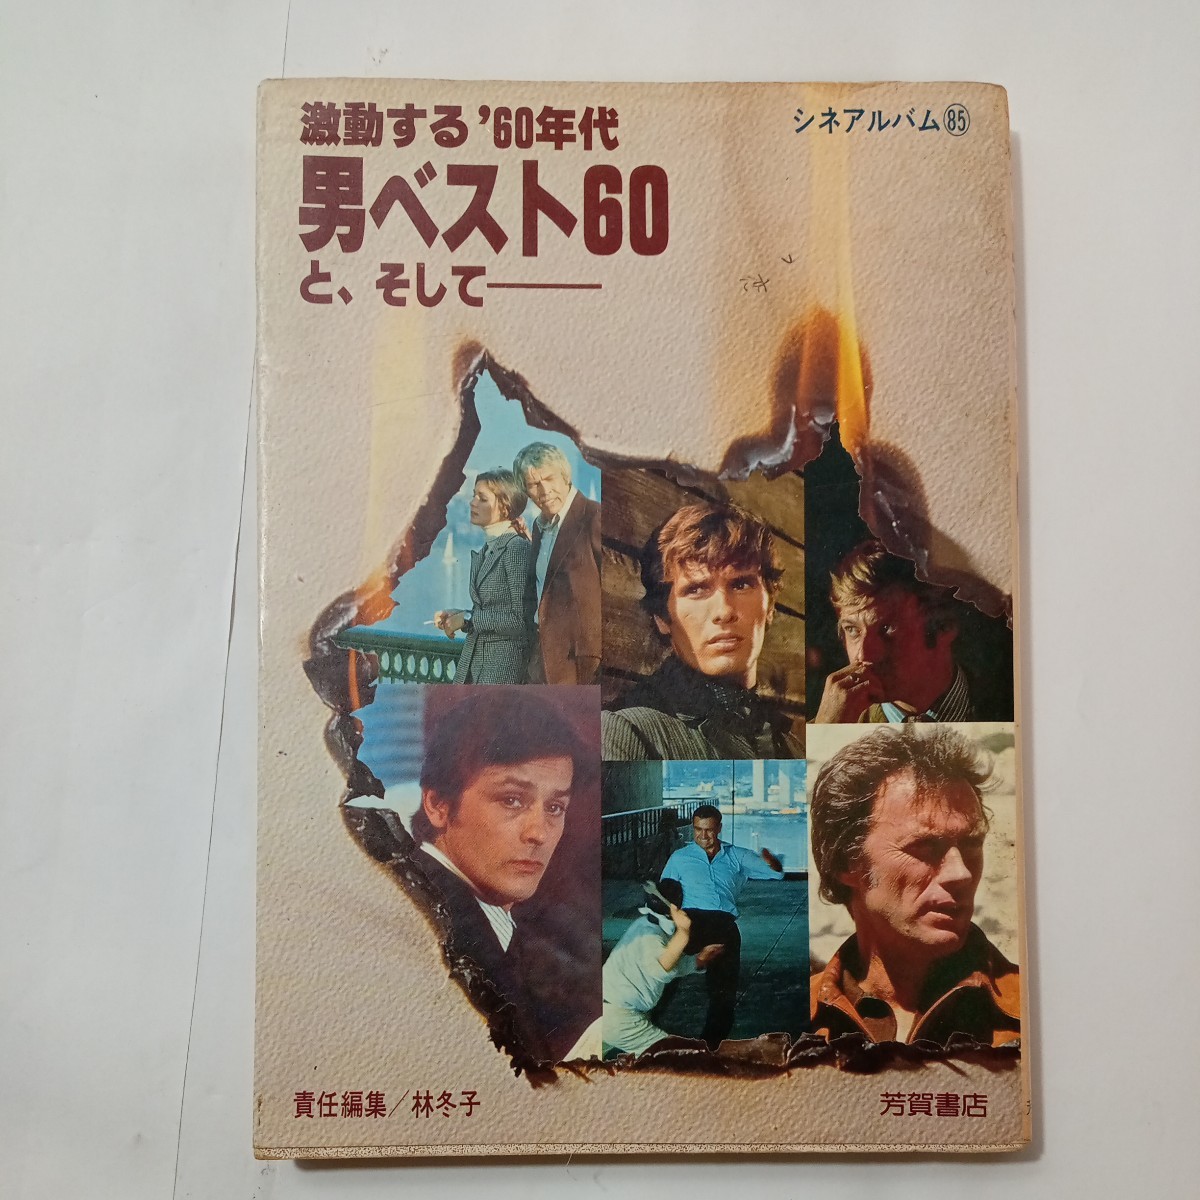 zaa-485♪男性のベスト60と - 激しい'60年代(シネアルバム(85)) 林 冬子(著)　芳賀書店 (1981年11月16日)